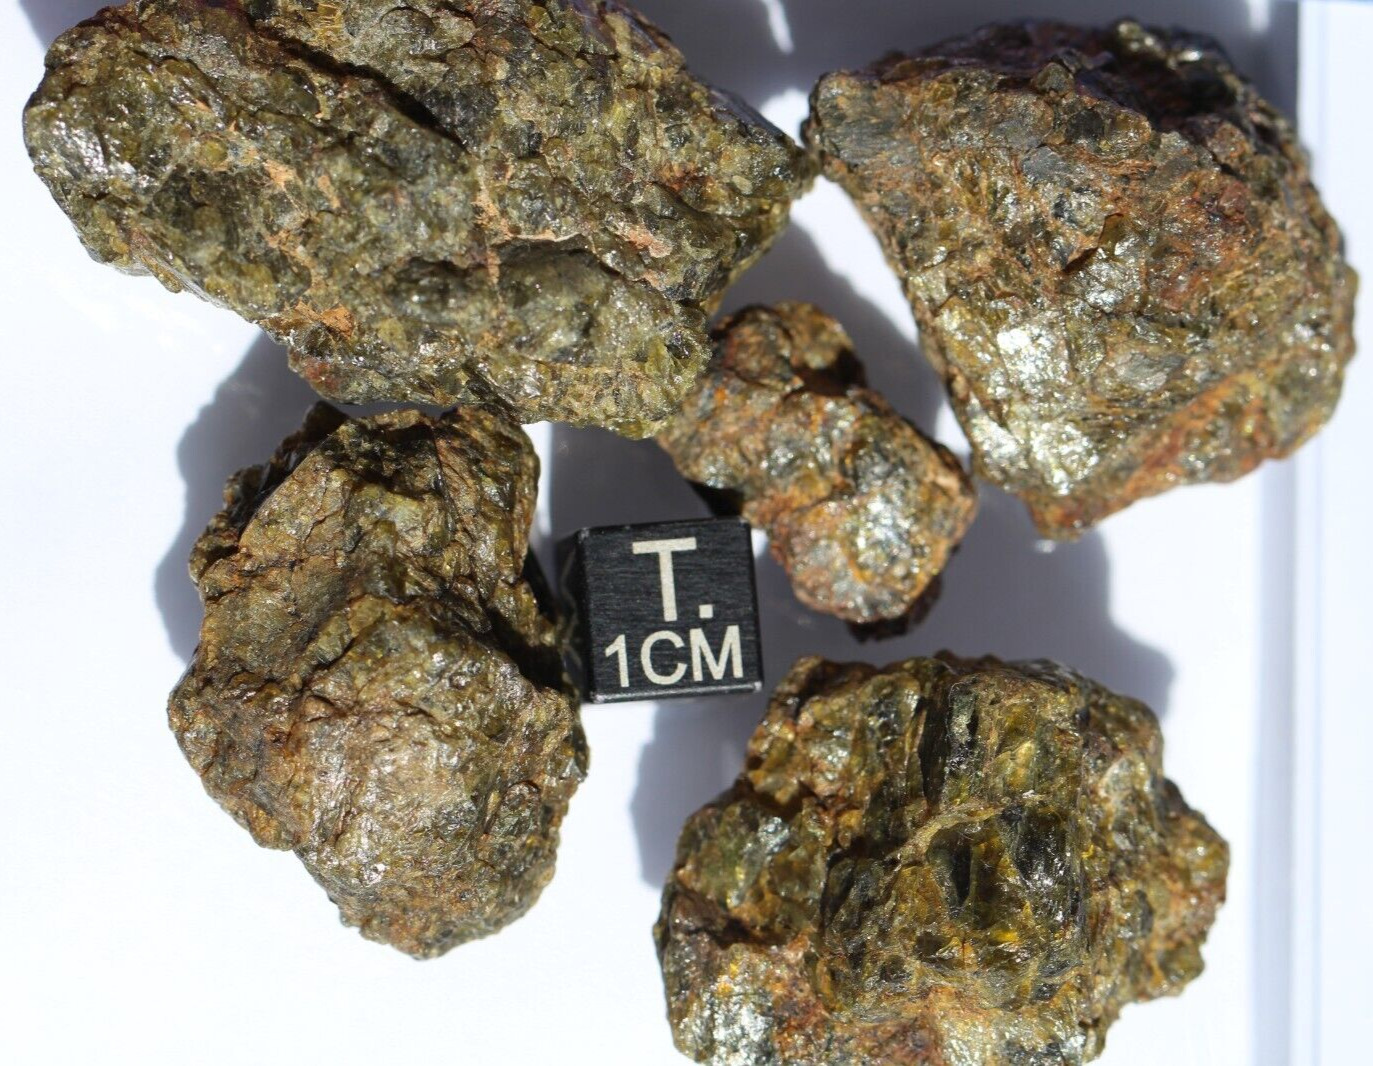 Meteorite NWA 7831 Diogenite HED Achondrite meteorite, 100 grams